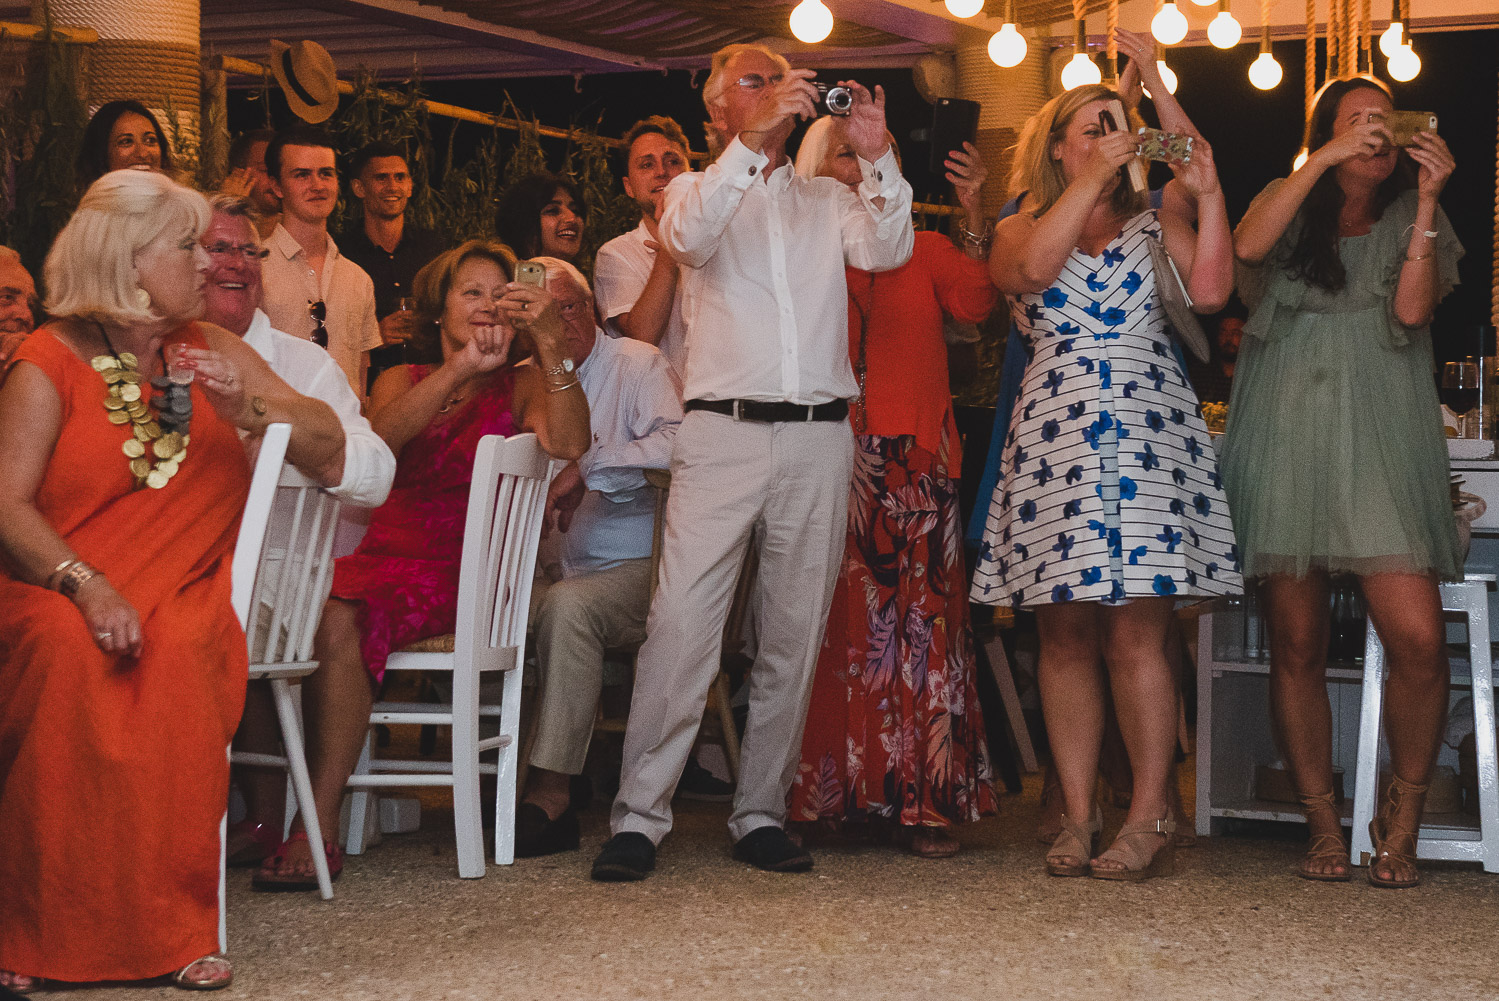 Wedding photographer Mykonos: guests cheering bride and groom at Elia during Mykonos wedding reception.